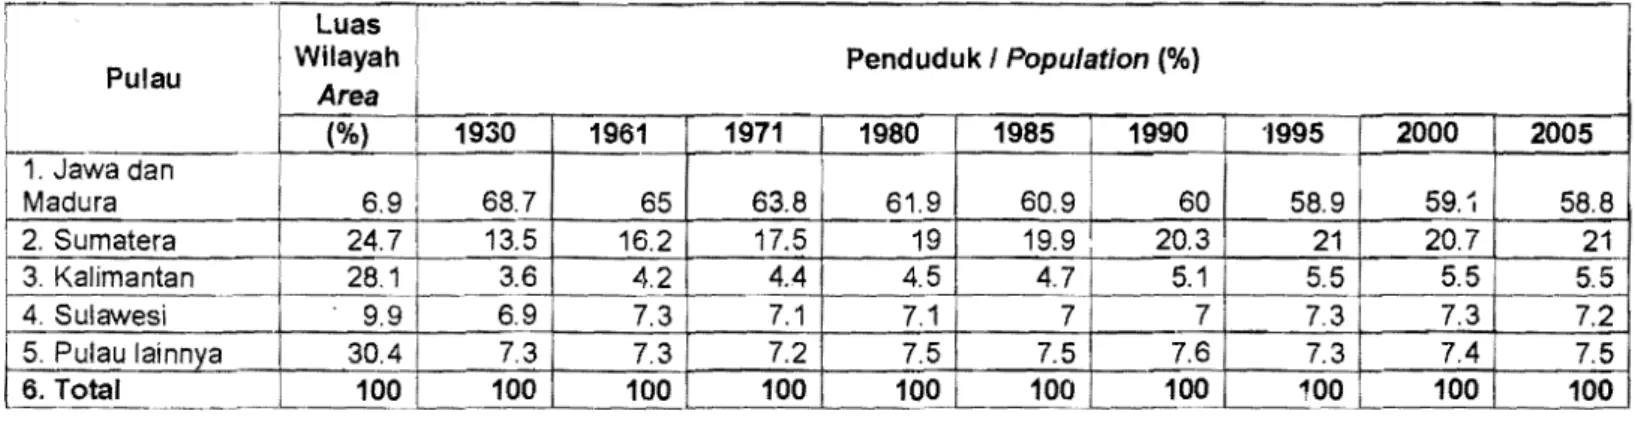 Tabel  1.1.  Oistribusi Persentase Luas dan Penduduk menurut Pulau 